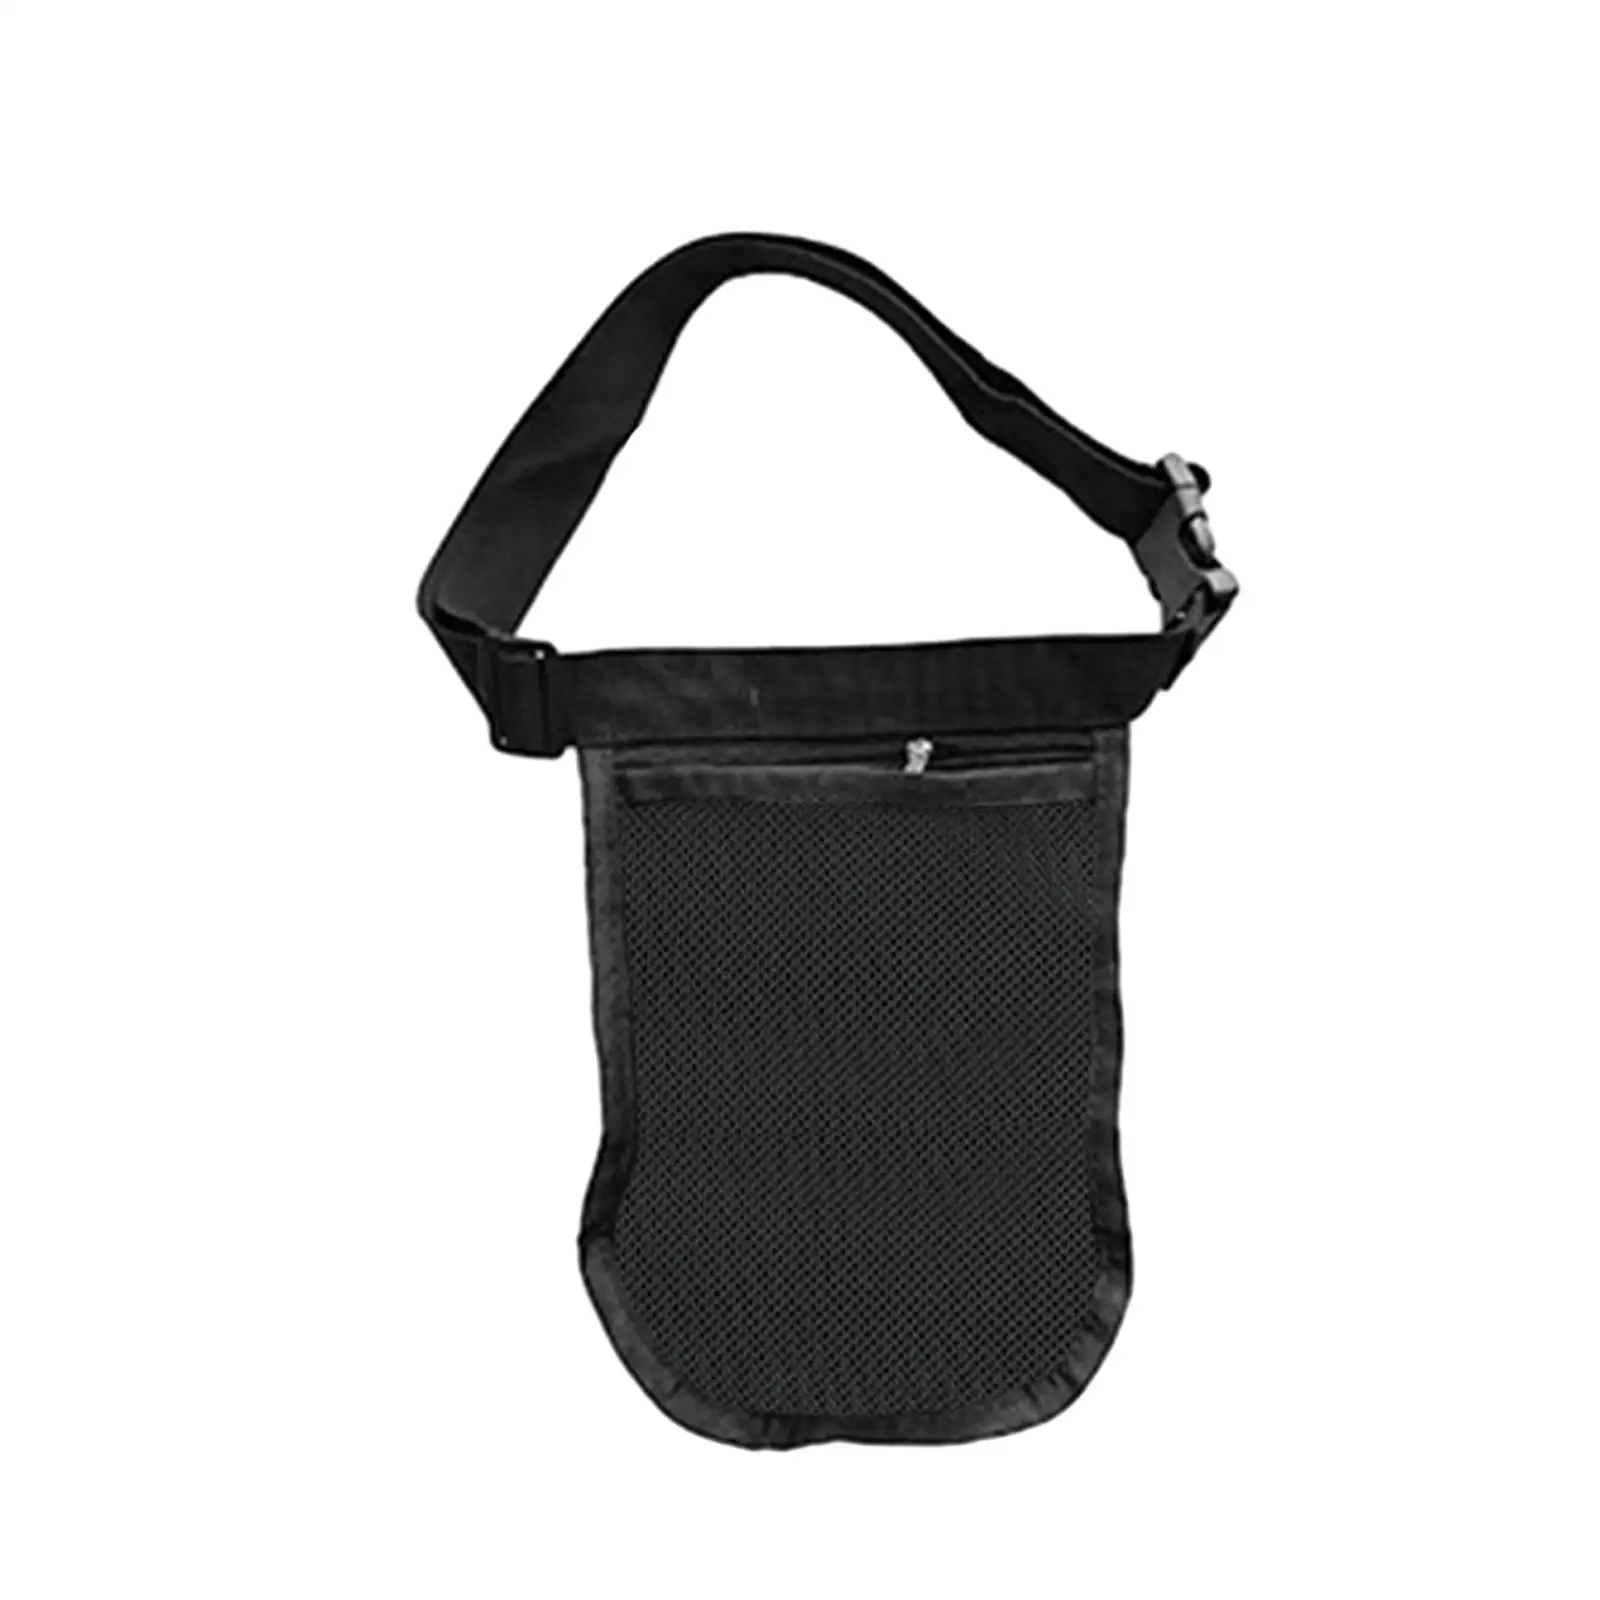 Black Tennis Ball Holder Sports Accessory Running Belt Waist Pouch Bag Mesh Storage Bag Tennis Ball Holder for Women Men